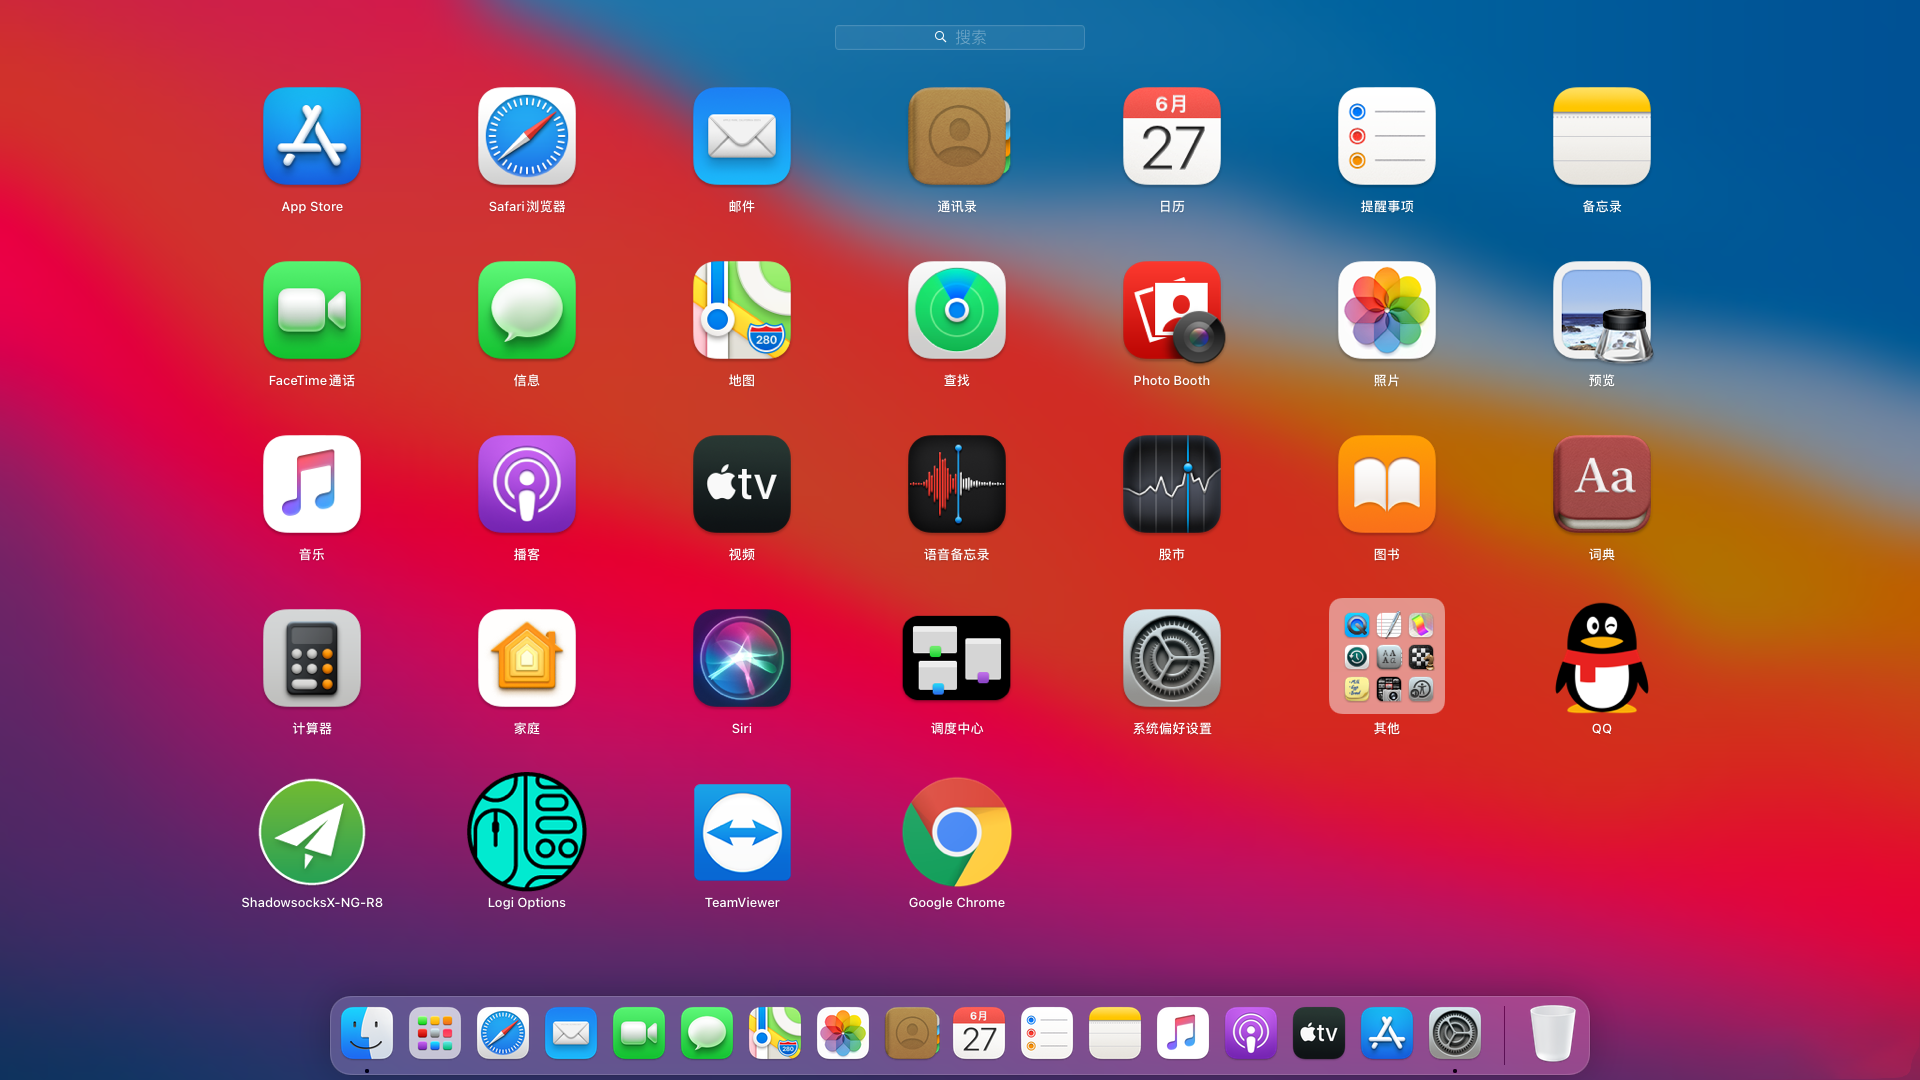 黑苹果MacOS Big Sur 11.0 安装教程及驱动工具